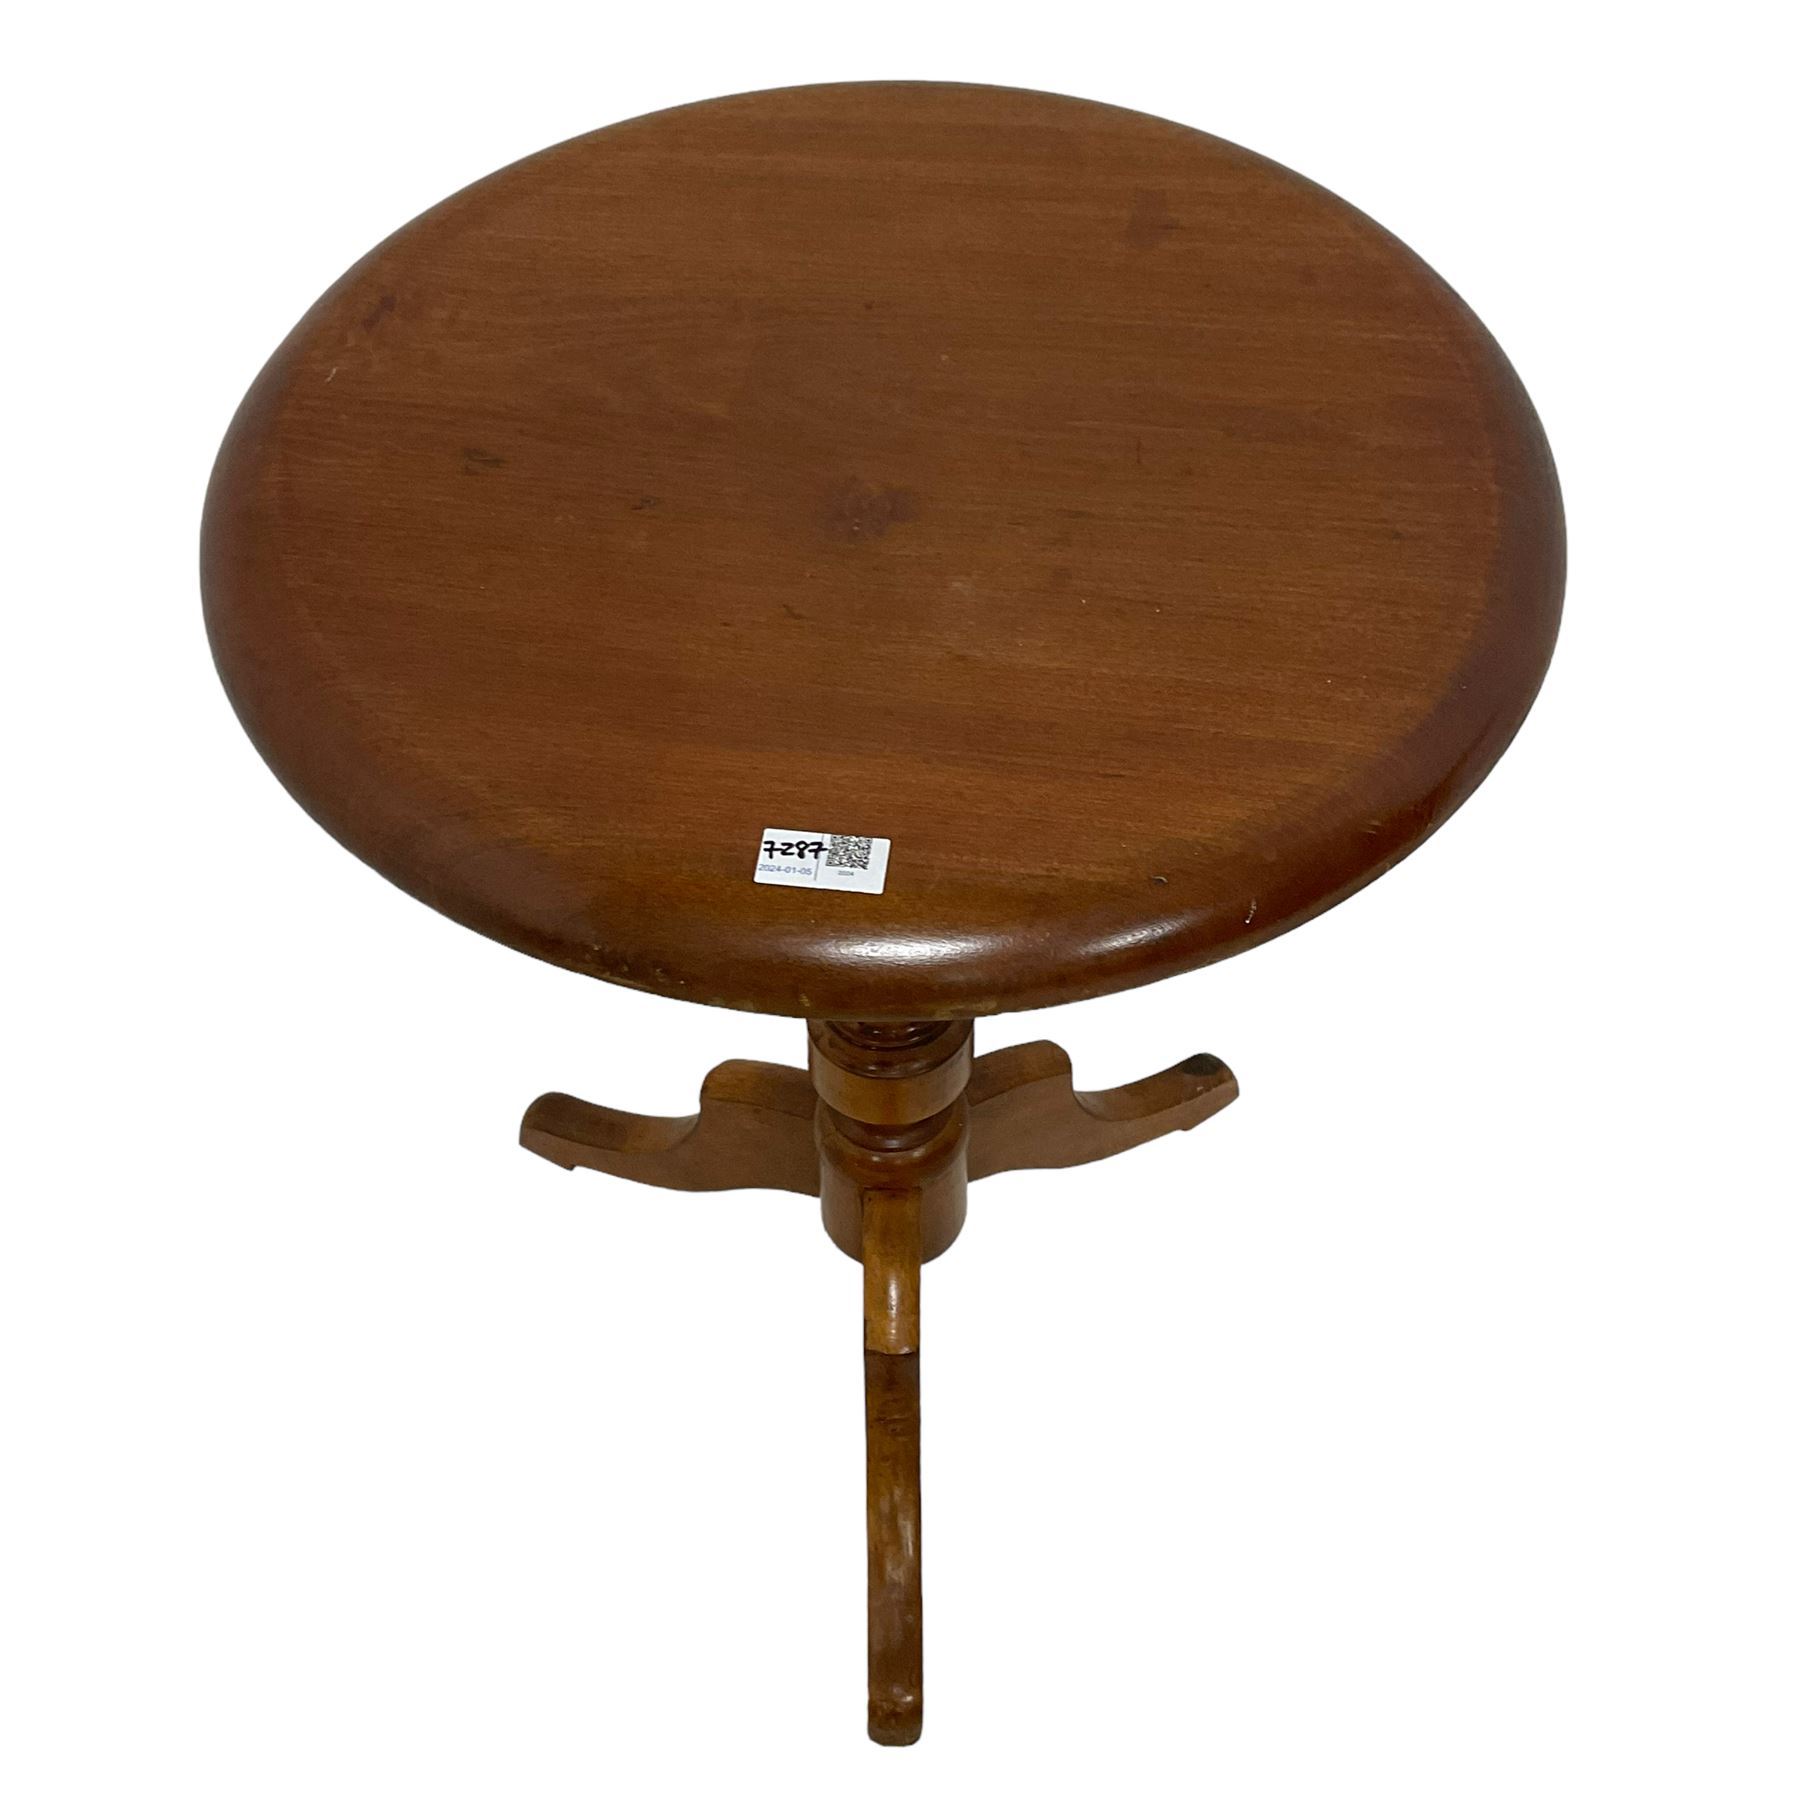 Victorian mahogany tripod table - Image 2 of 3